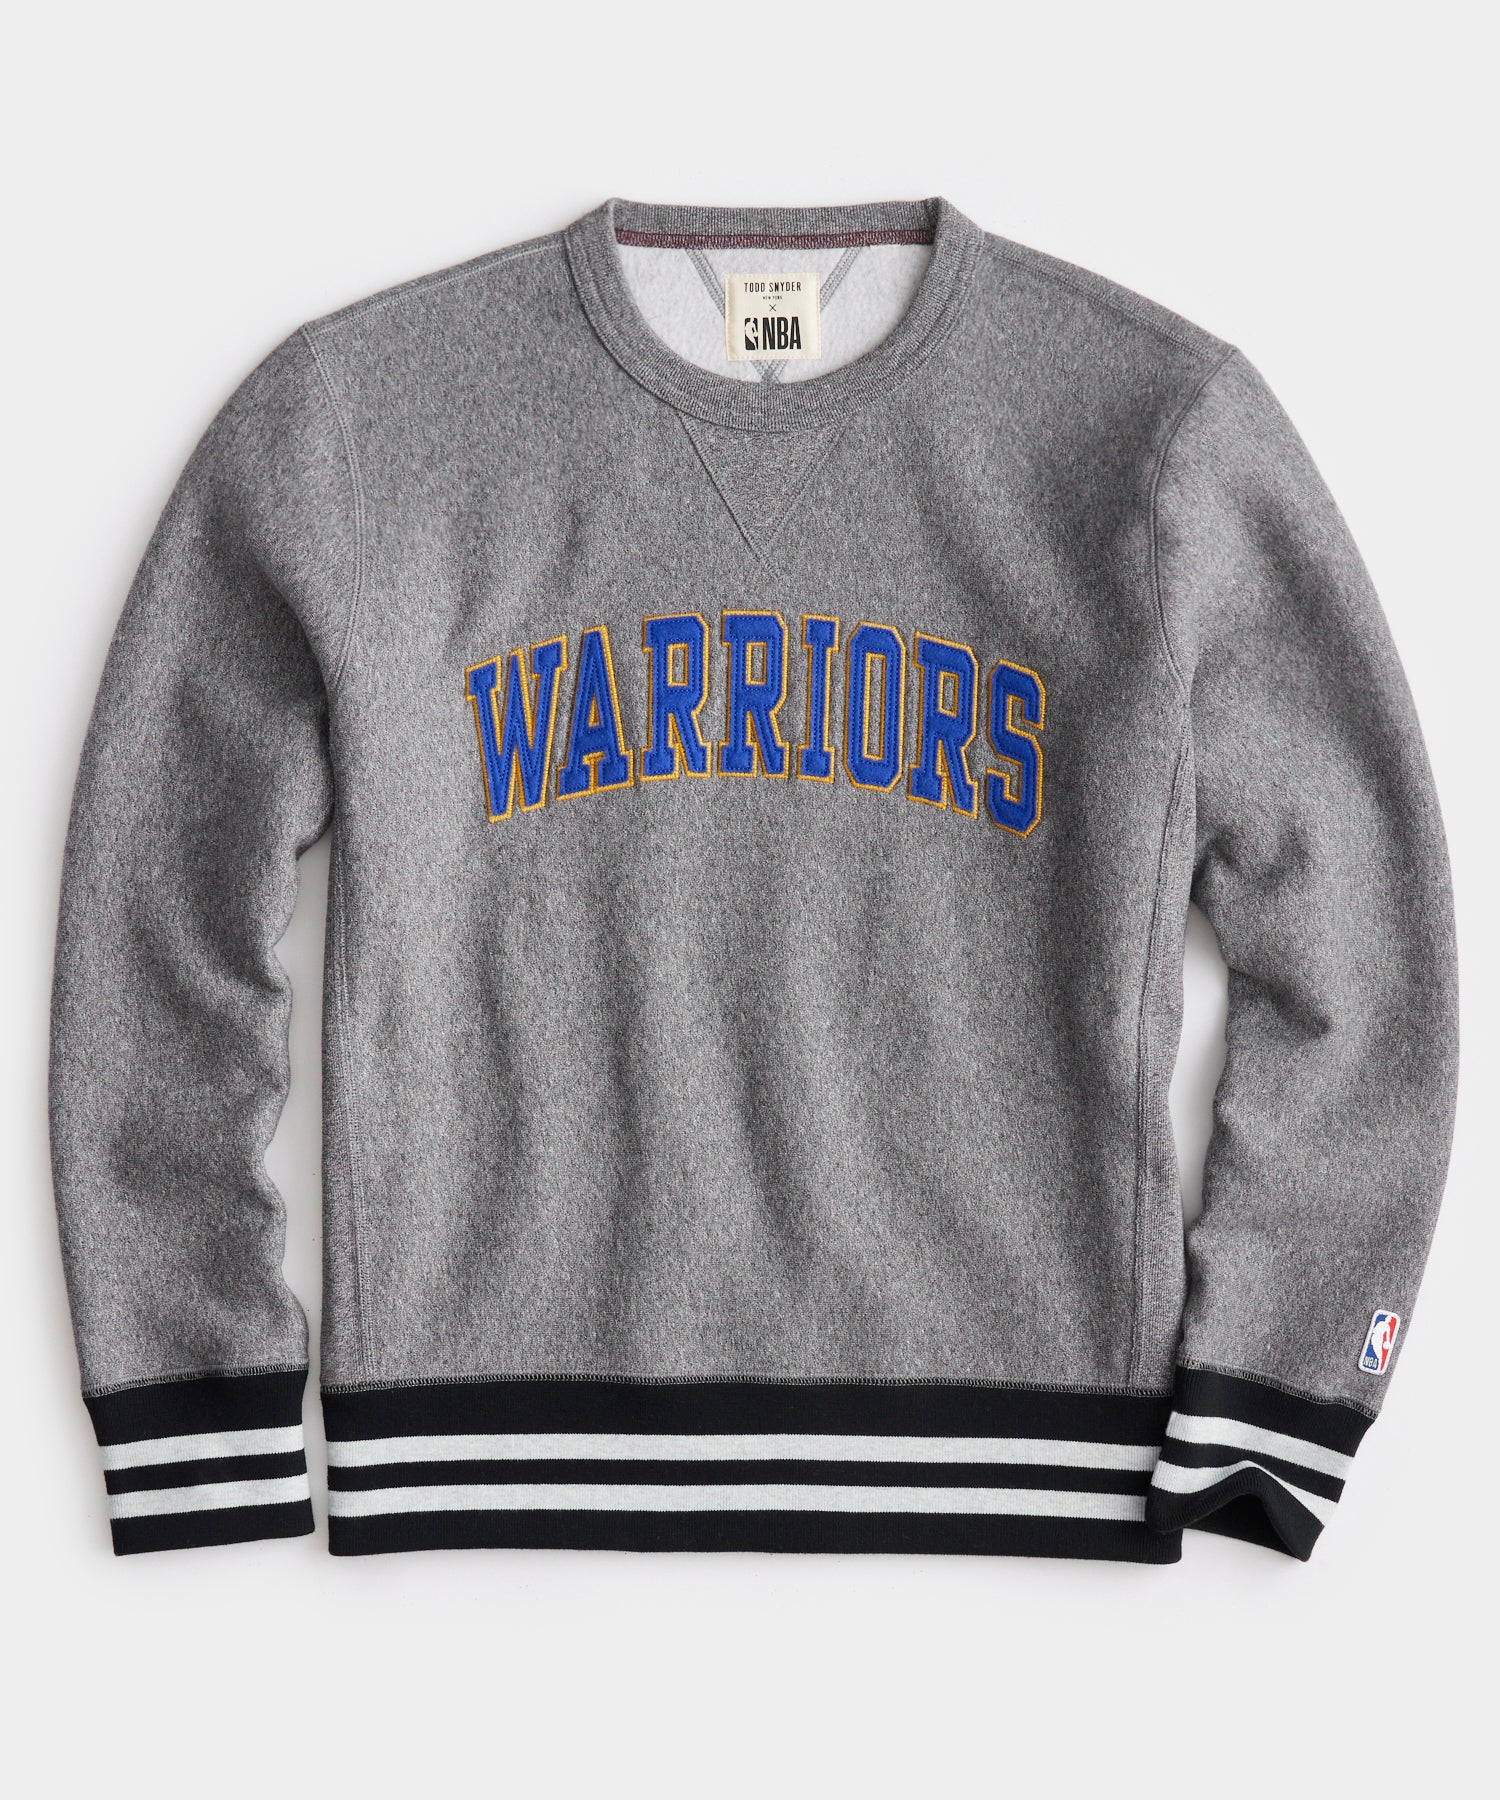 Golden State Warriors Apparel & Gear